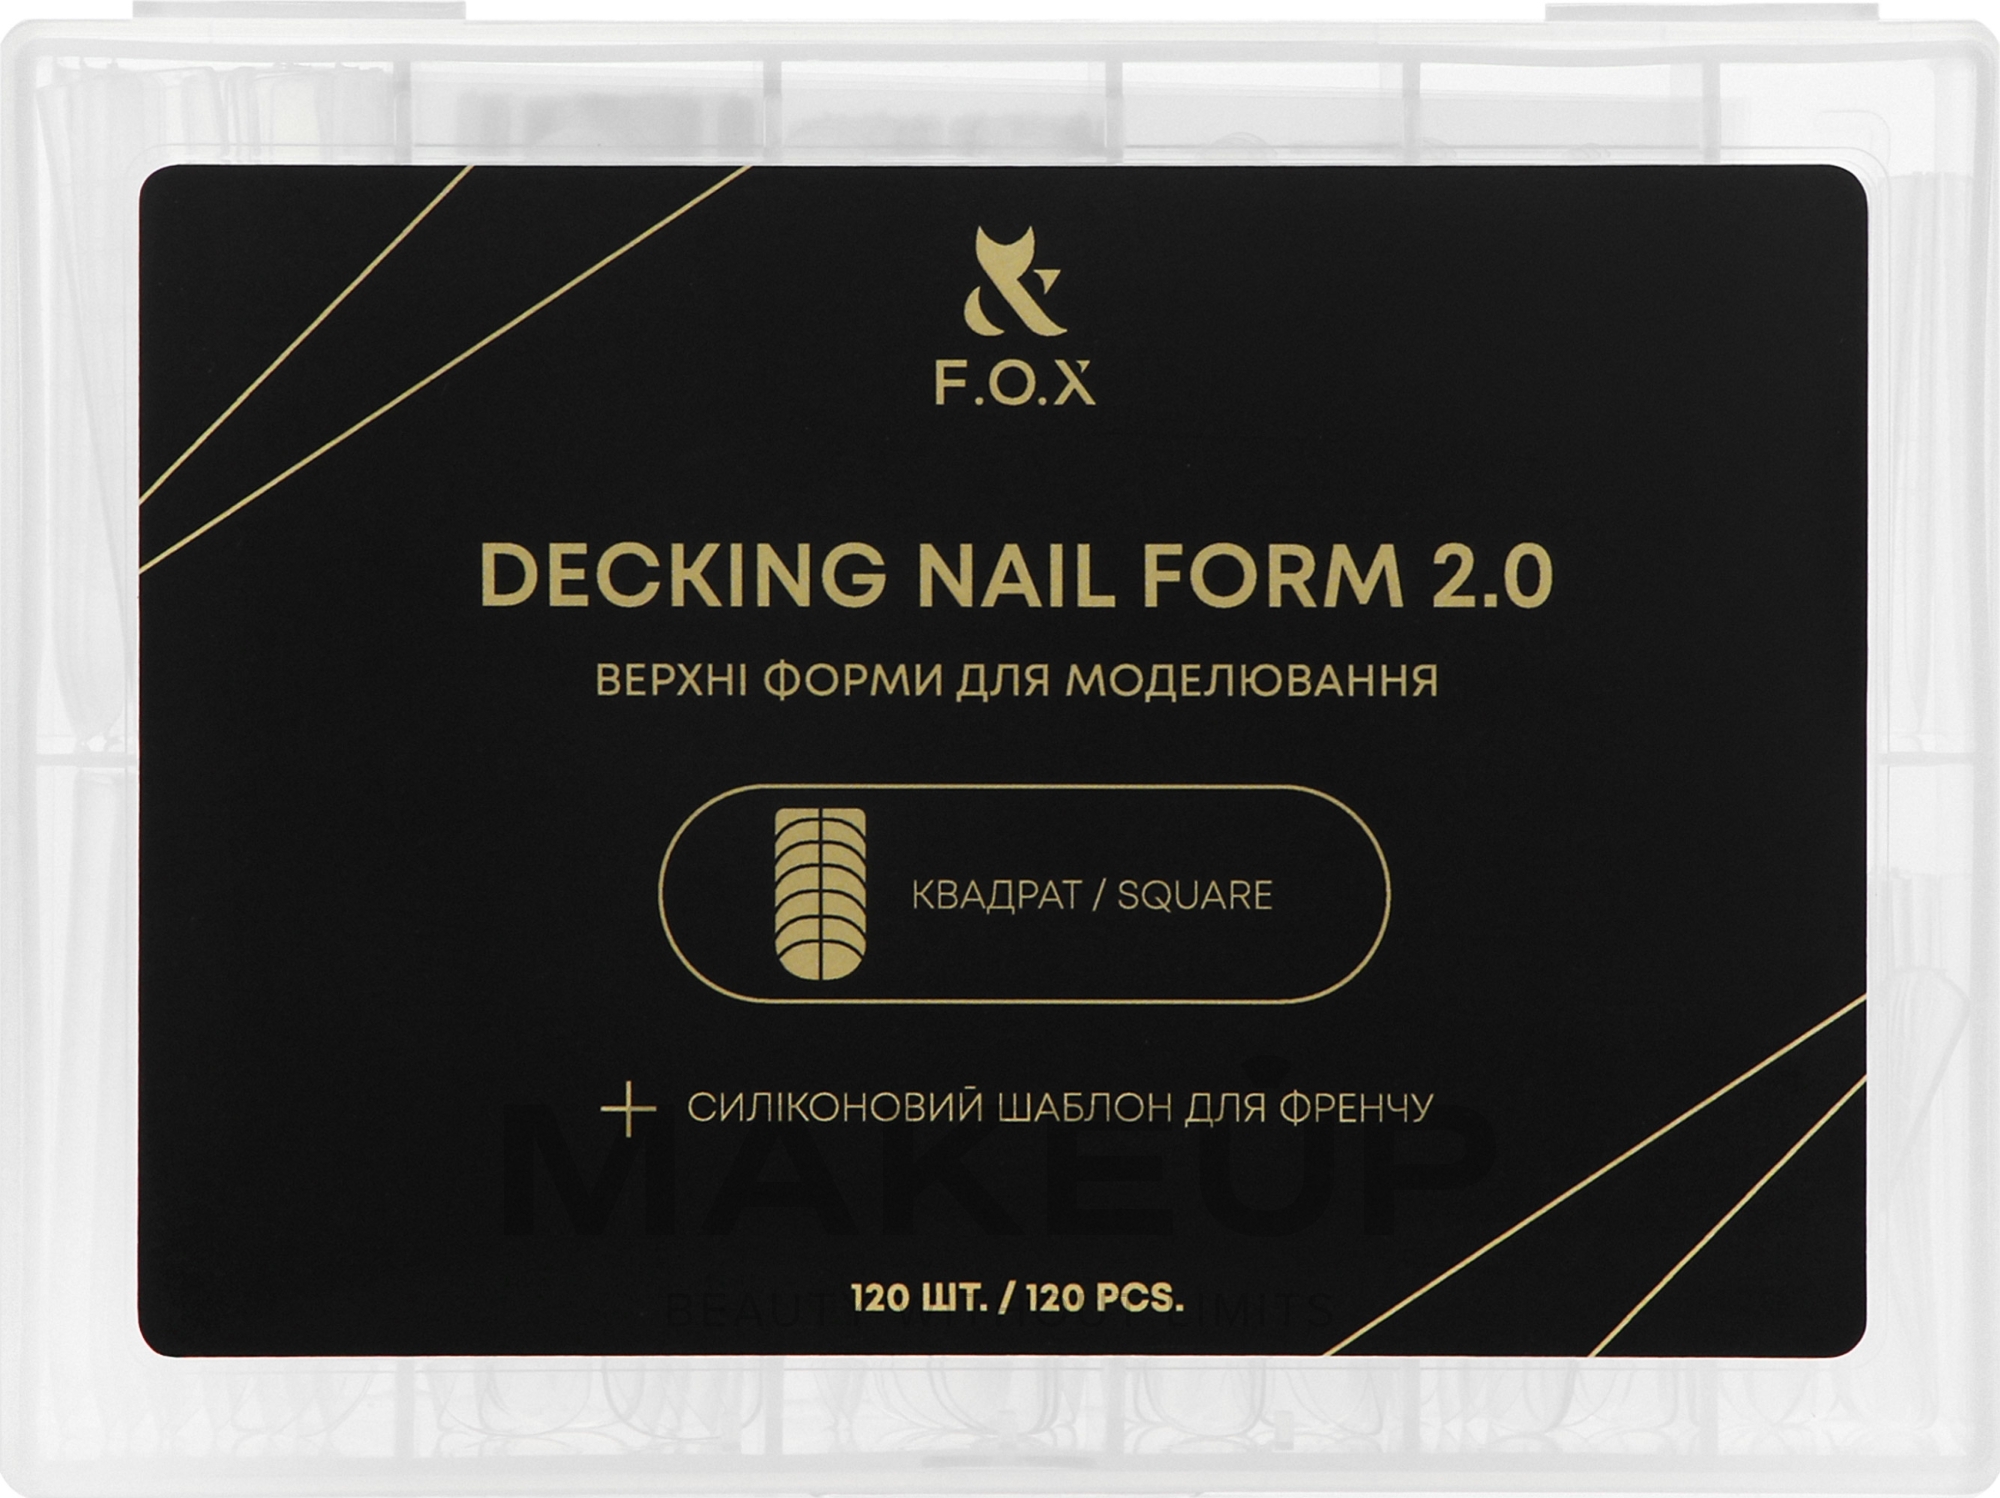 Верхні форми для моделювання, квадрат - F.O.X Decking Nail Form 2.0 — фото 120шт